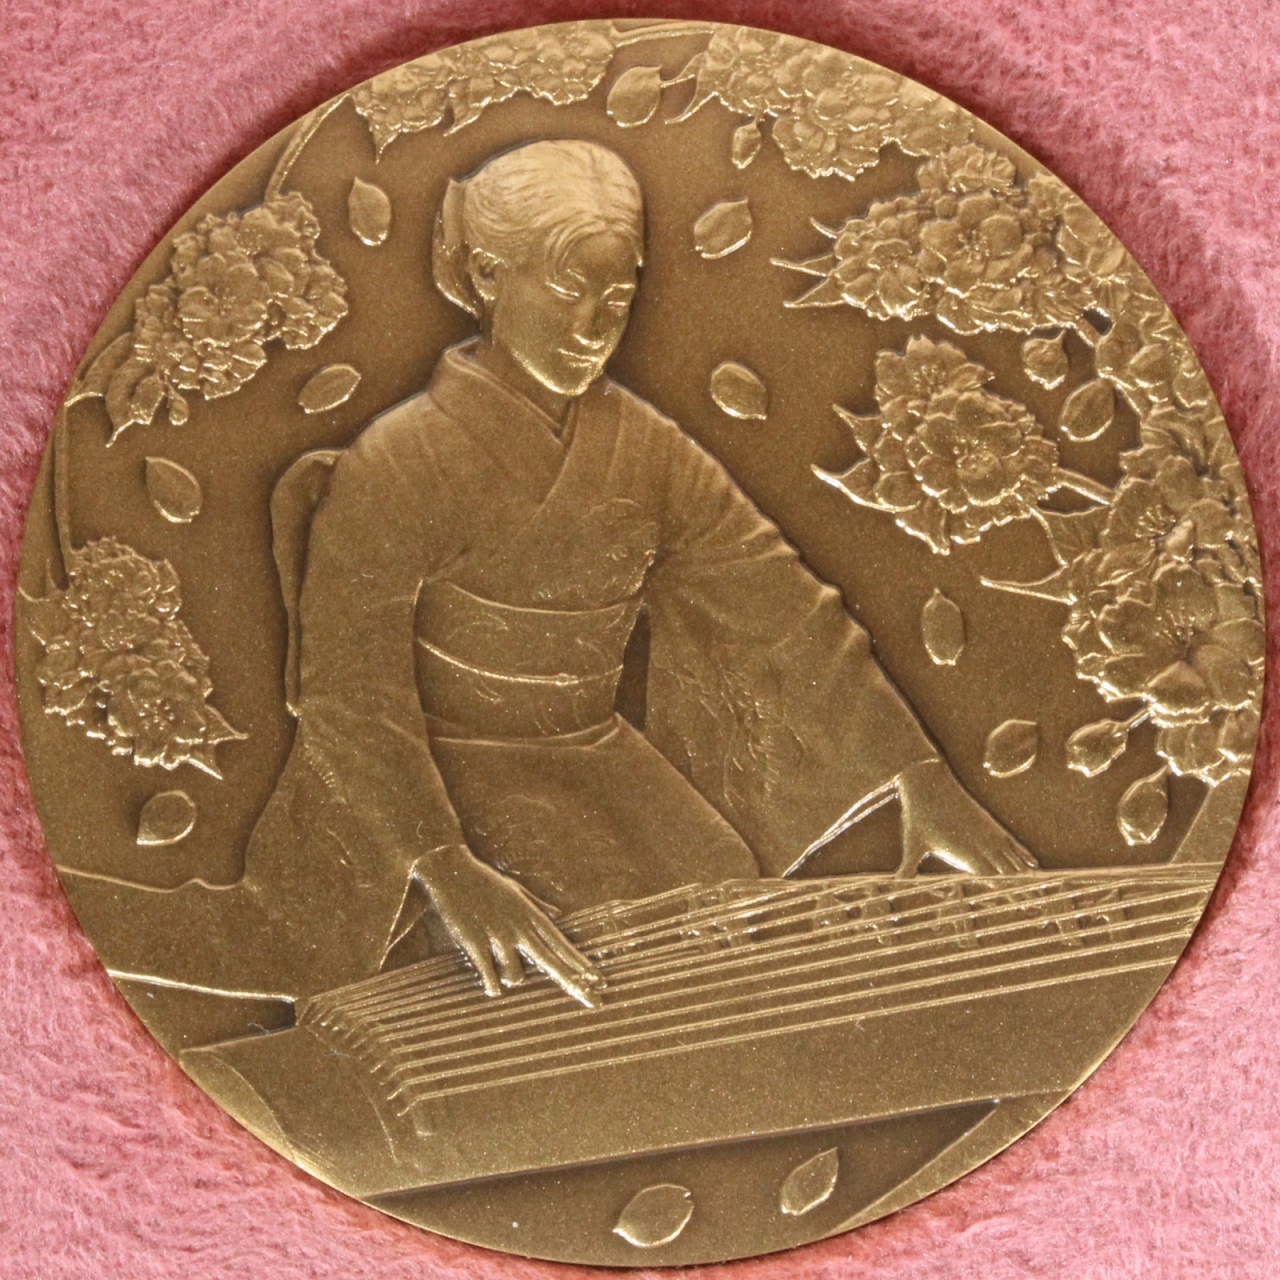 造幣局製 純銀メダル 約104g 桜の通り抜け 1982年記念メダル シルバー 